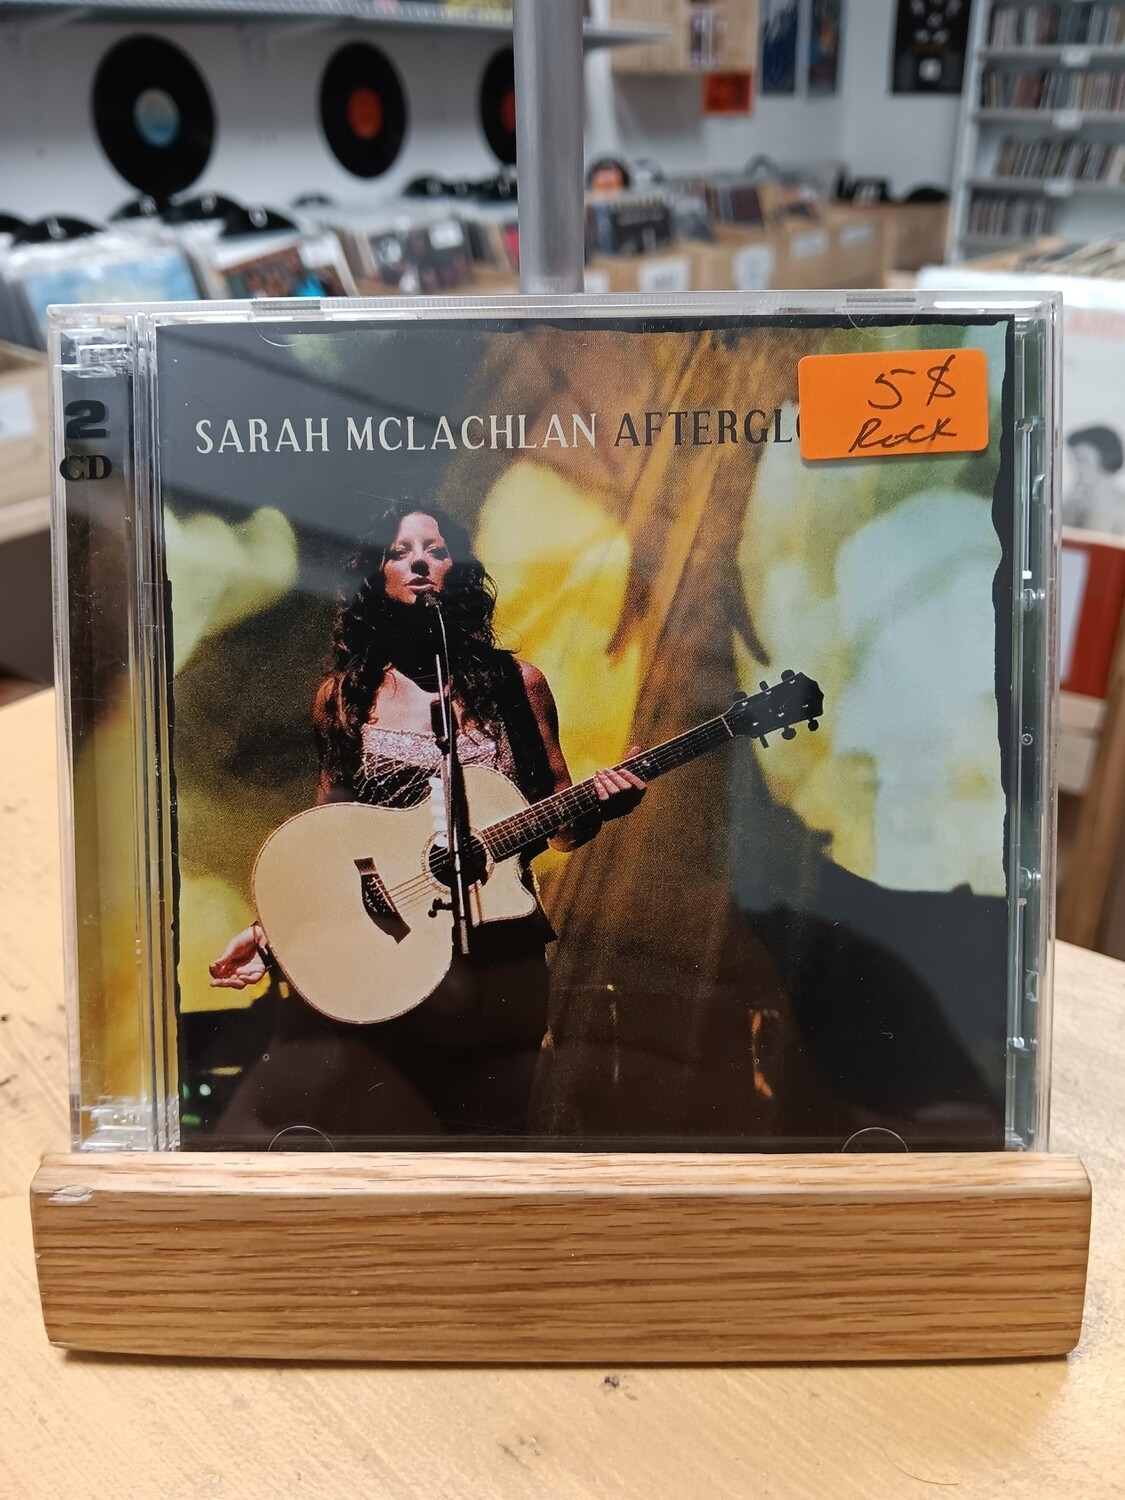 Sarah McLachlan - Afterglow live (CD)